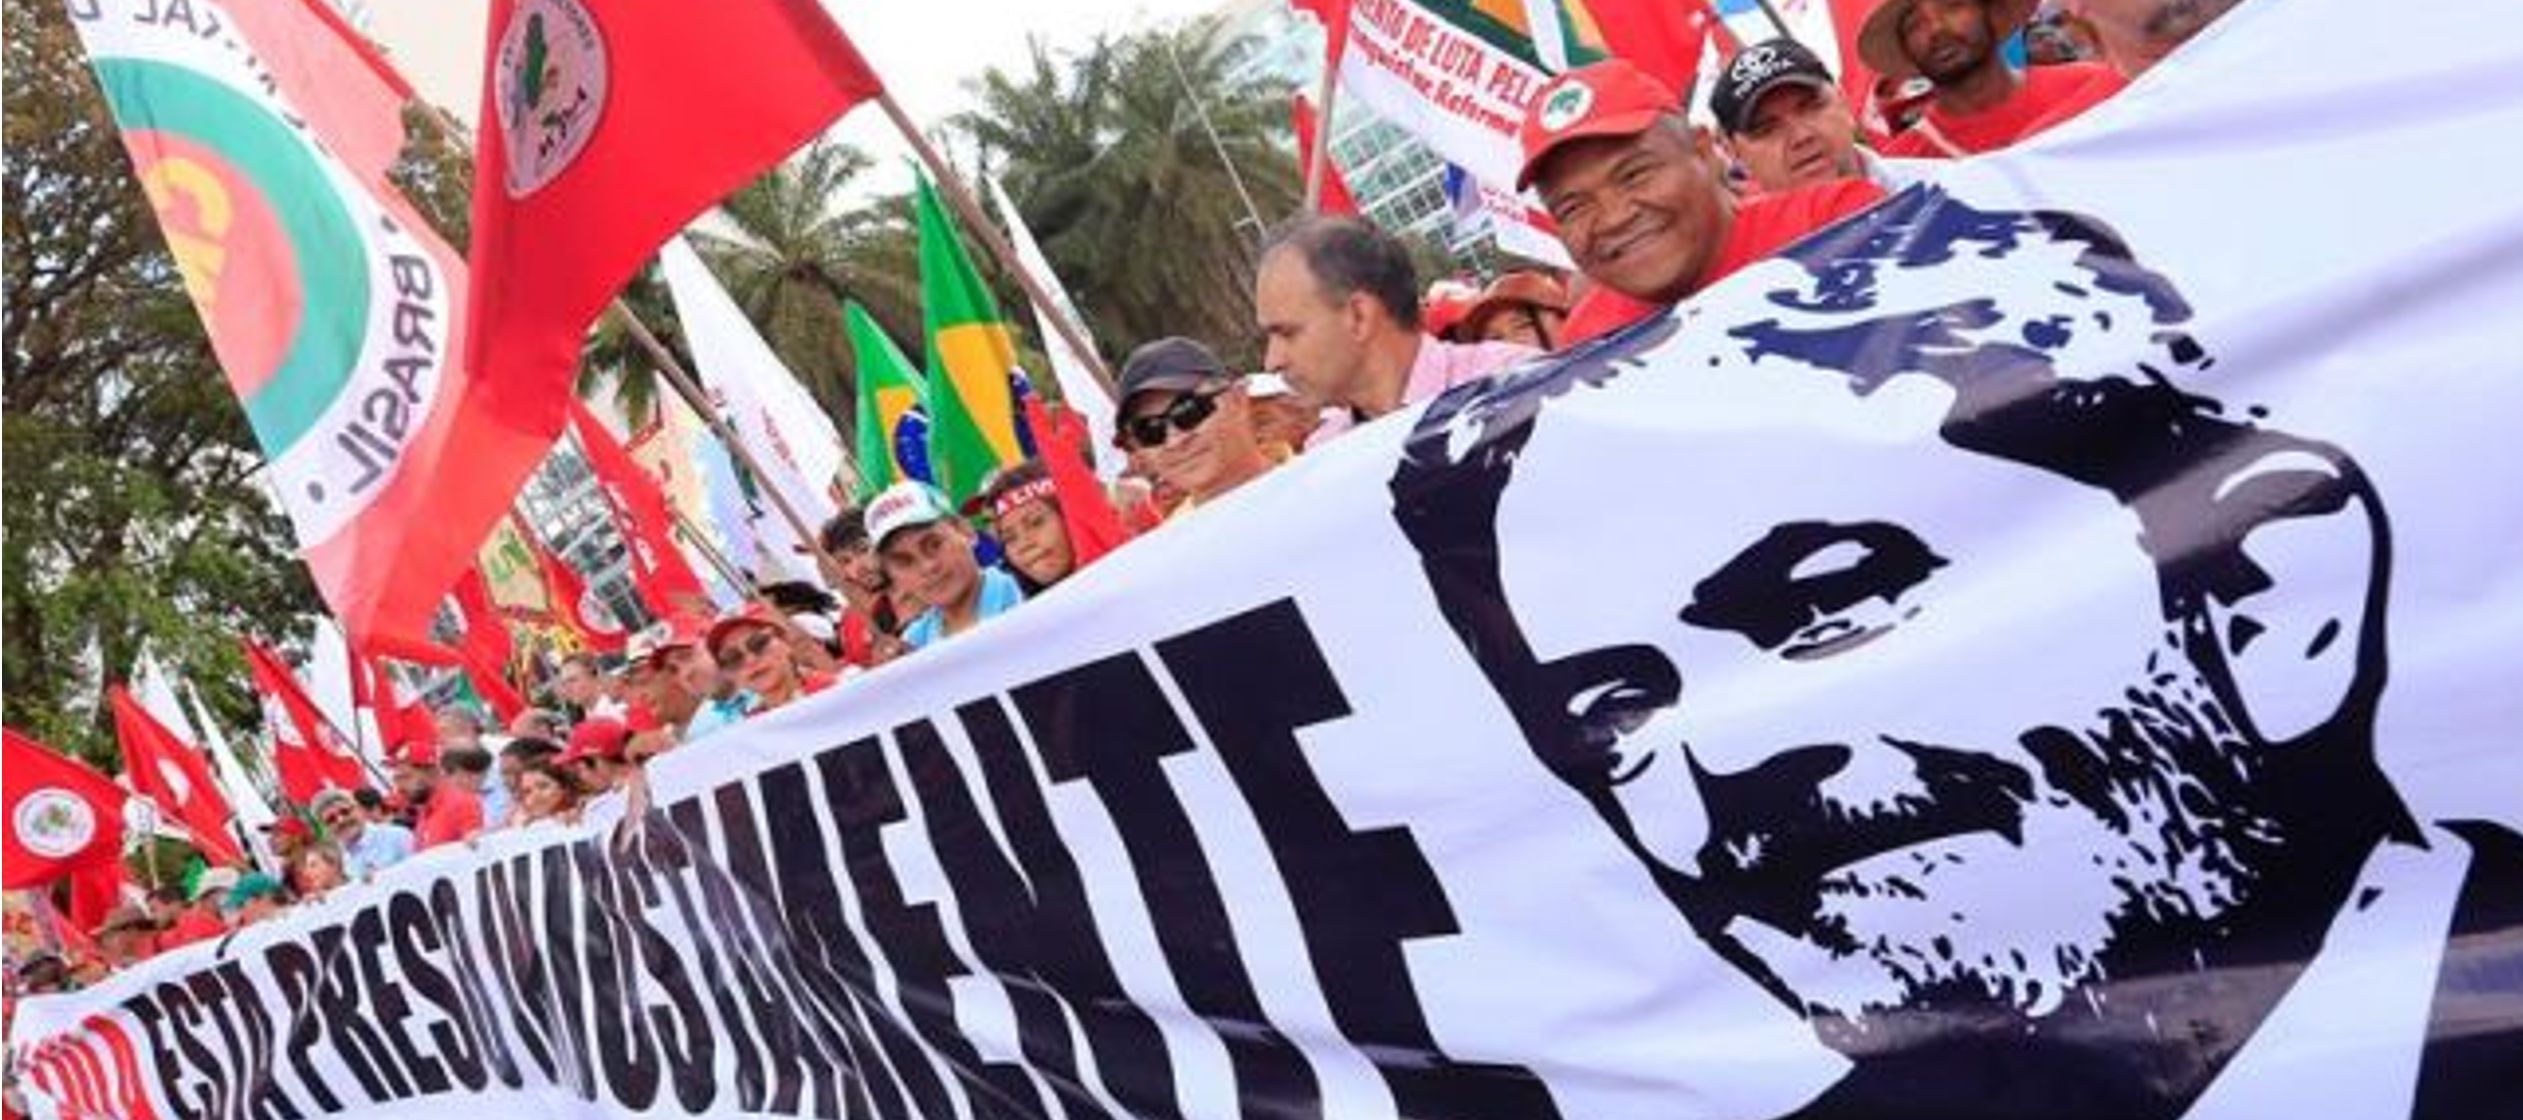 En los alrededores de la corte se movilizaron miles de personas que exigieron la libertad de Lula,...